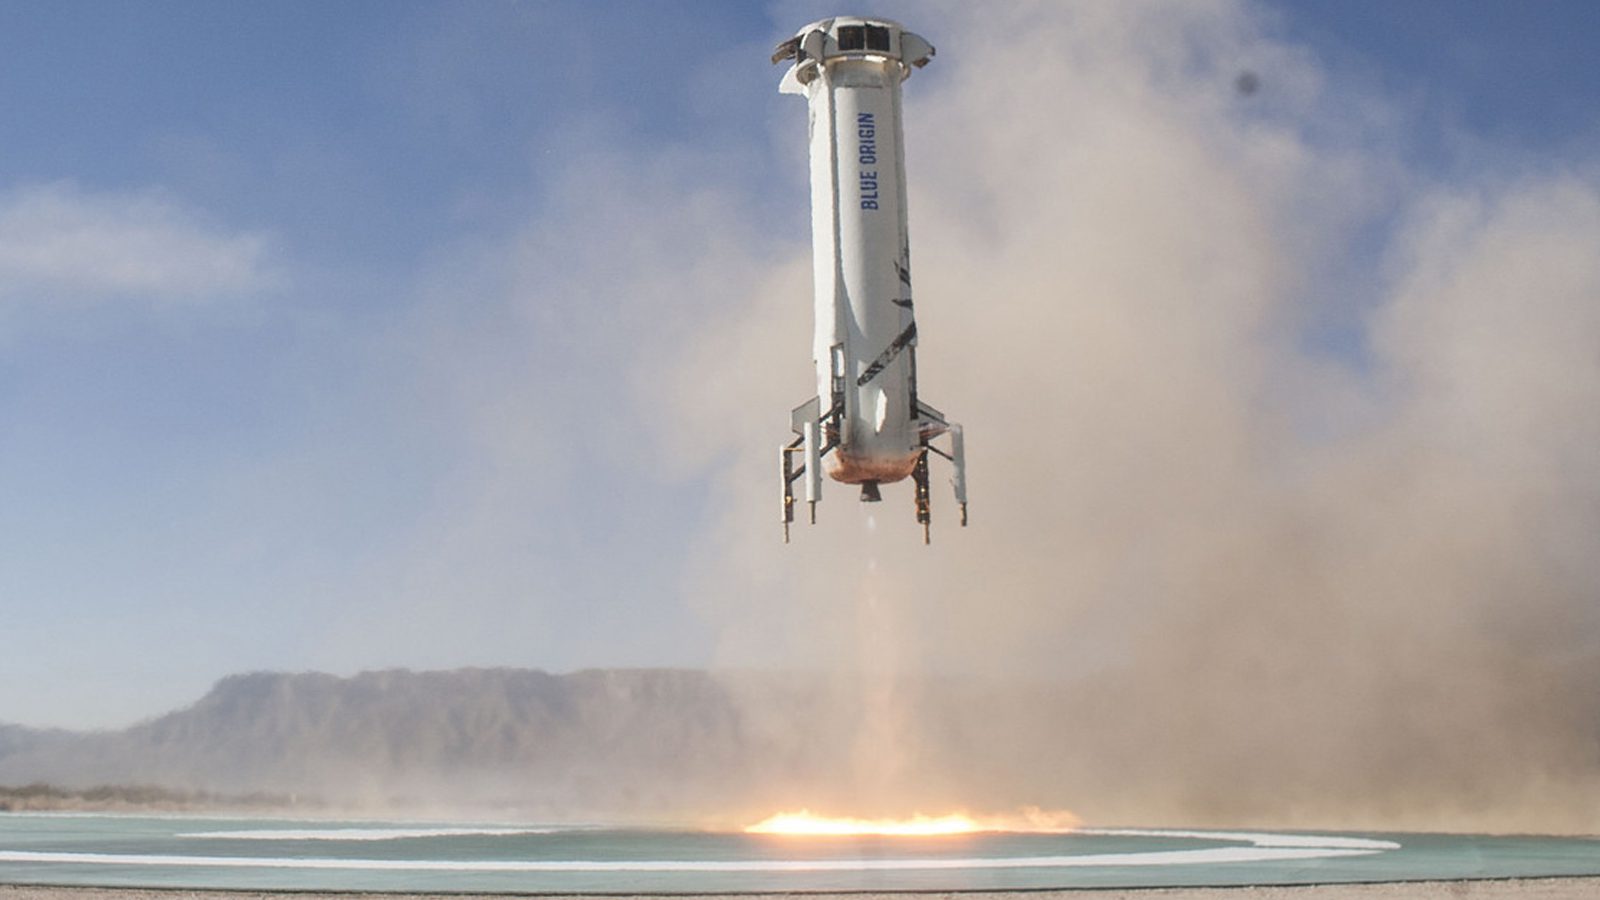 Джефф Безос вместе с братом полетит на ракете космического туризма в июле